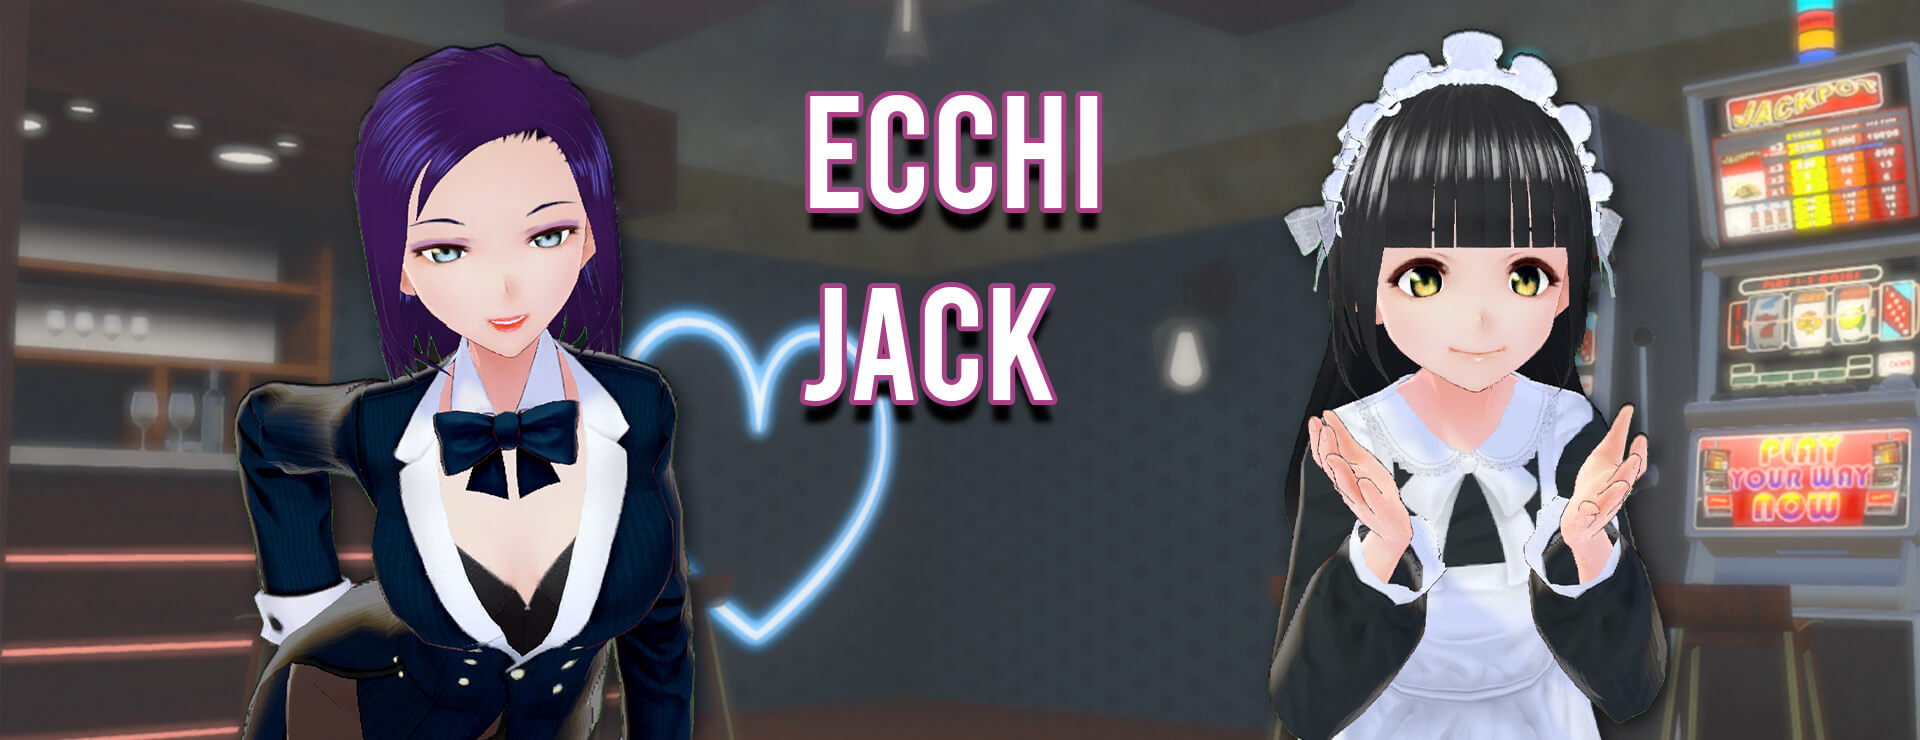 Ecchi Jack - Casual Juego